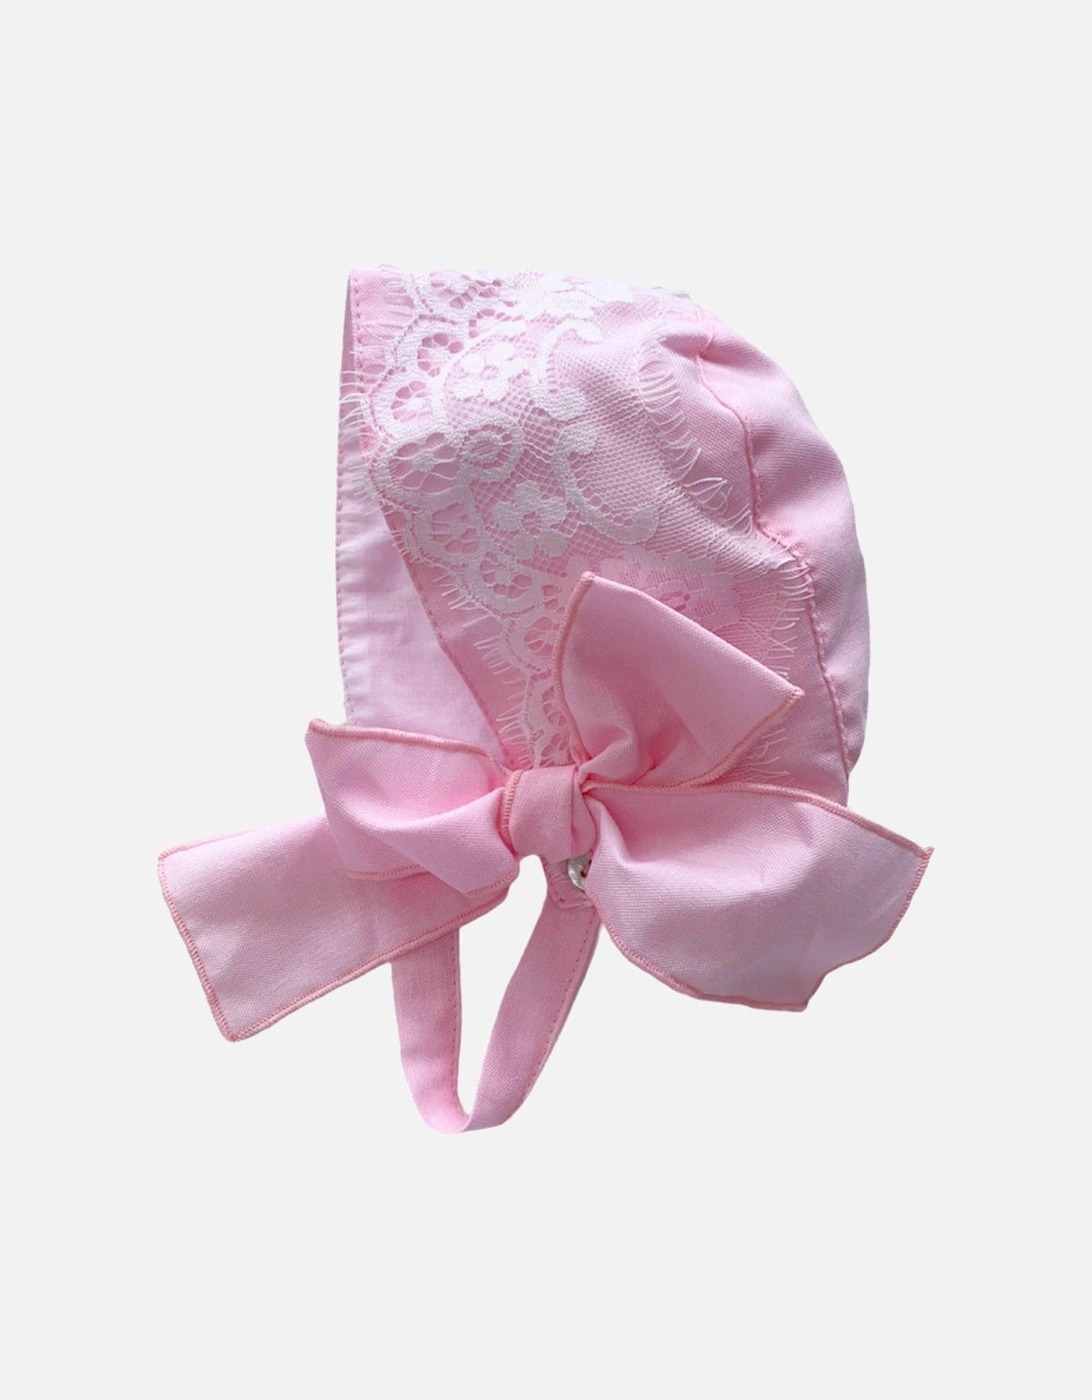 Pink Lace Bonnet, 2 of 1